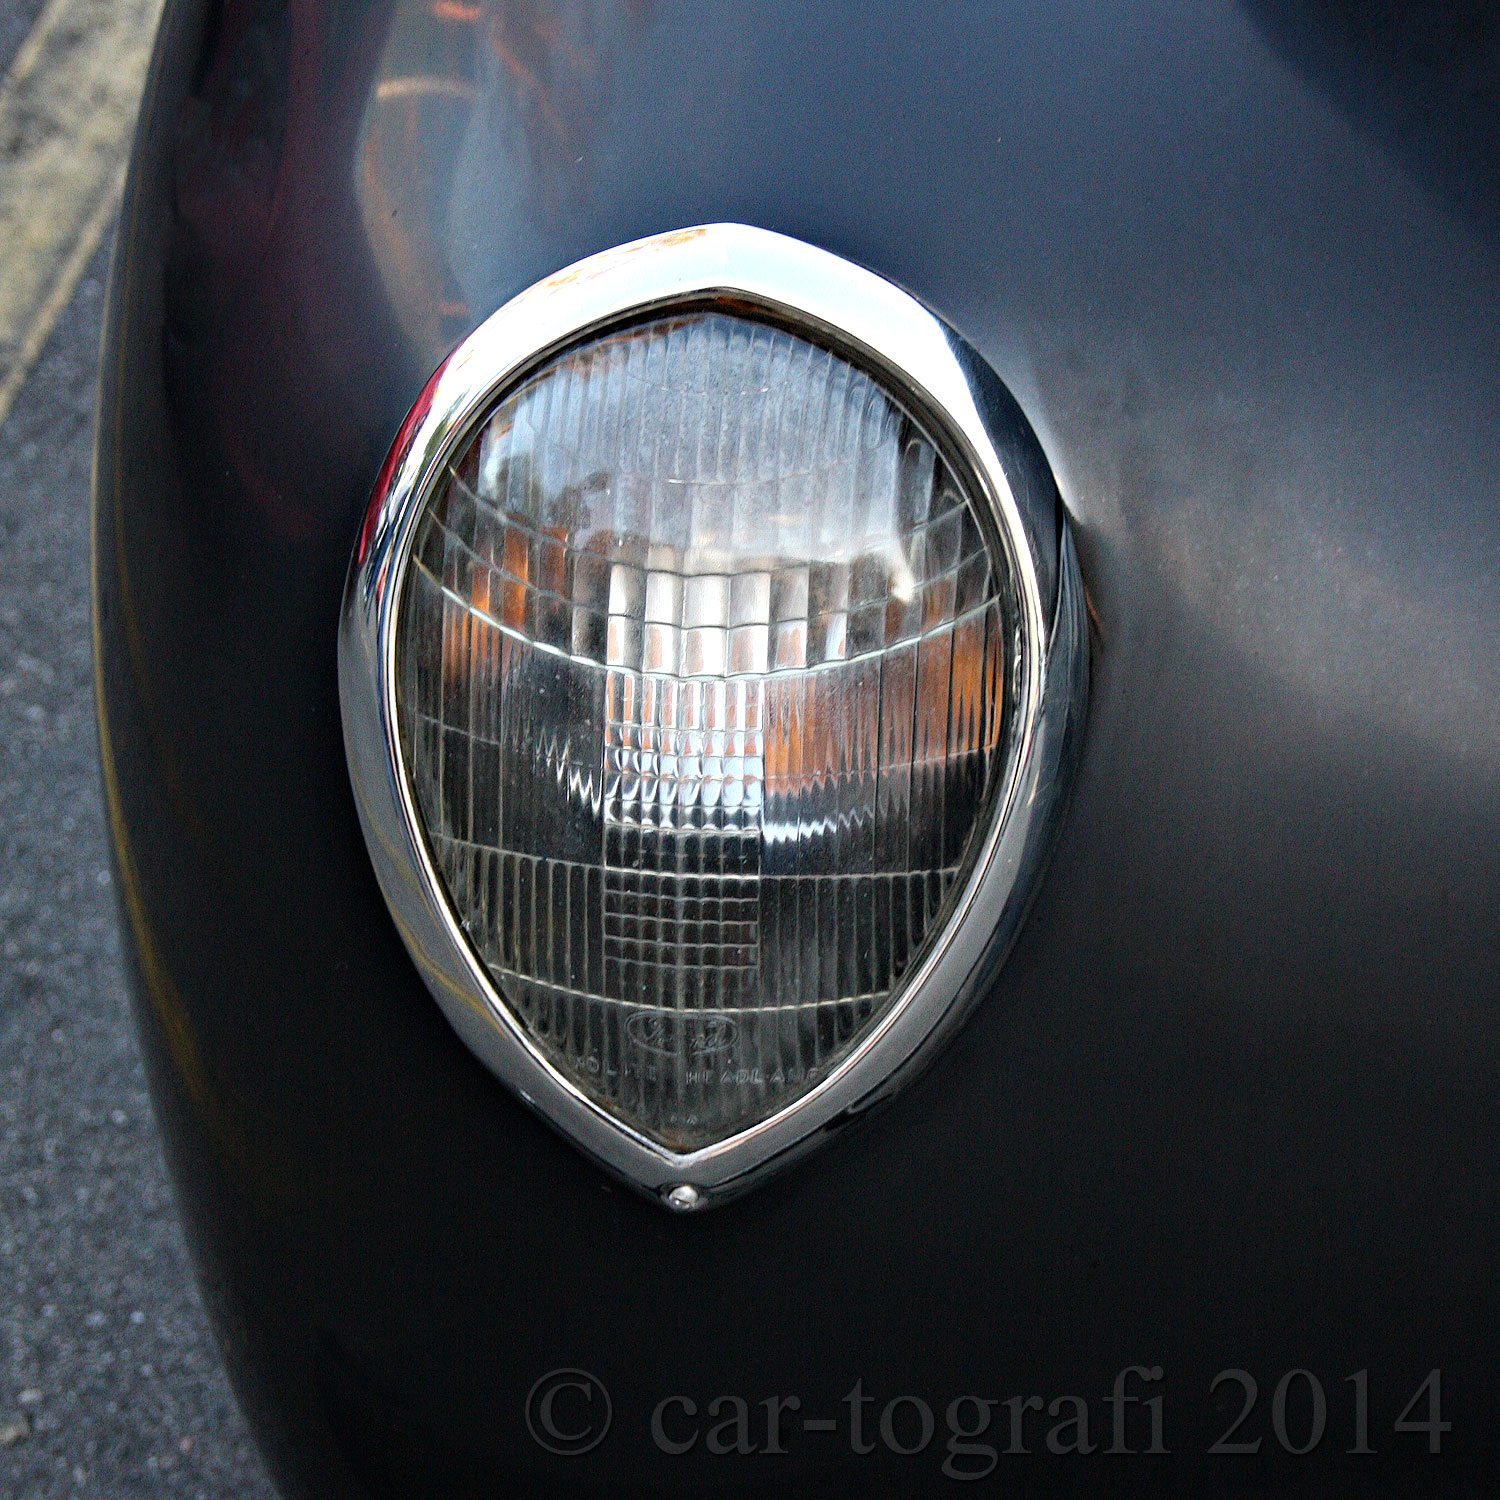 Lights-Ford-Drop-car-tografi-2014.jpg